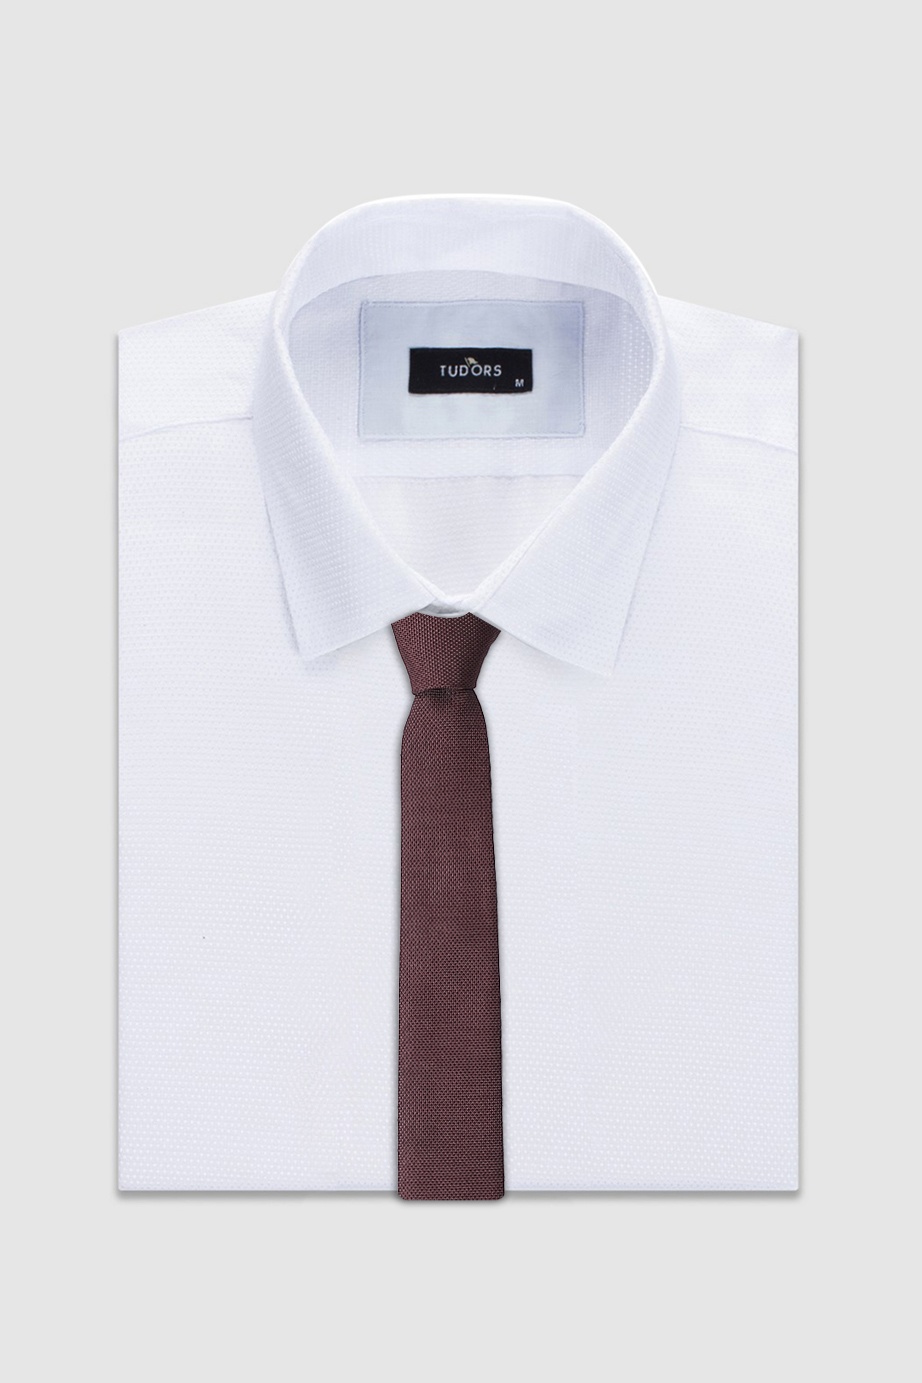 Plain Brown Tie